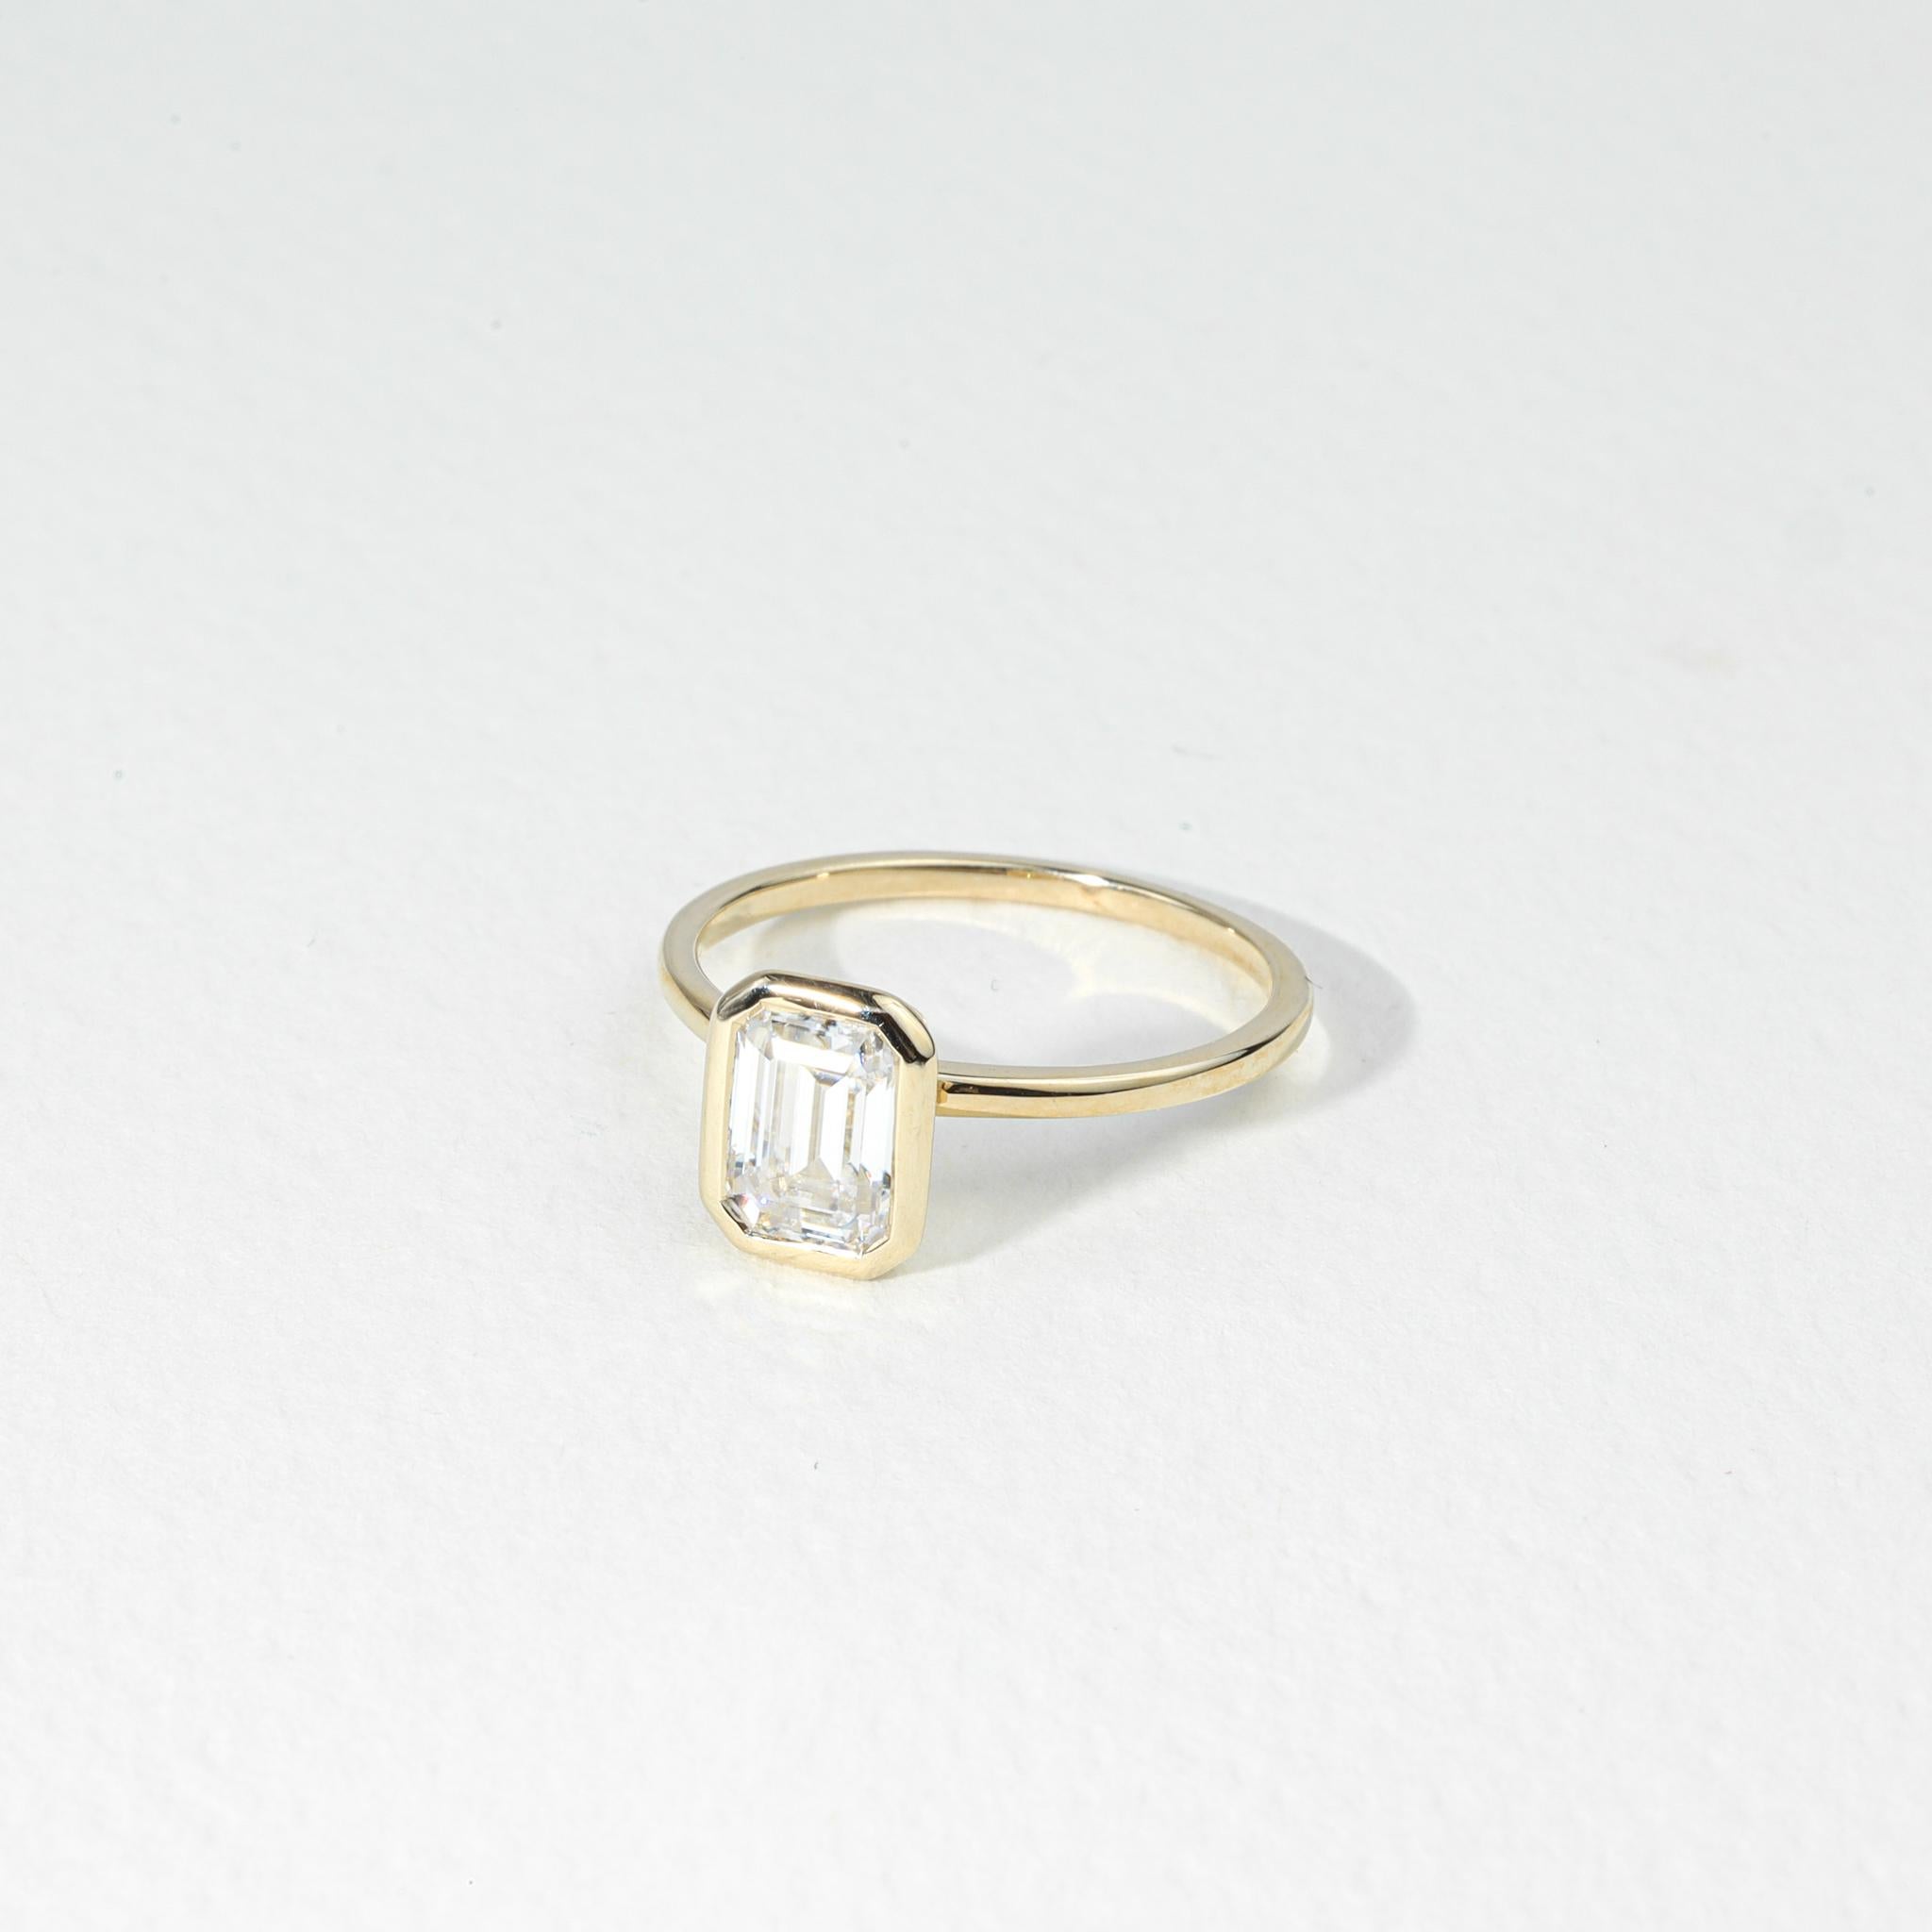 GIA Report Certified D IF 1 Carat Emerald Cut Solitaire Diamond Engagement Ring

Disponible en or blanc 18k.

Le même design peut être réalisé avec d'autres pierres précieuses sur demande.

Détails du produit :

- Or massif Or jaune 18k 

- Pierre